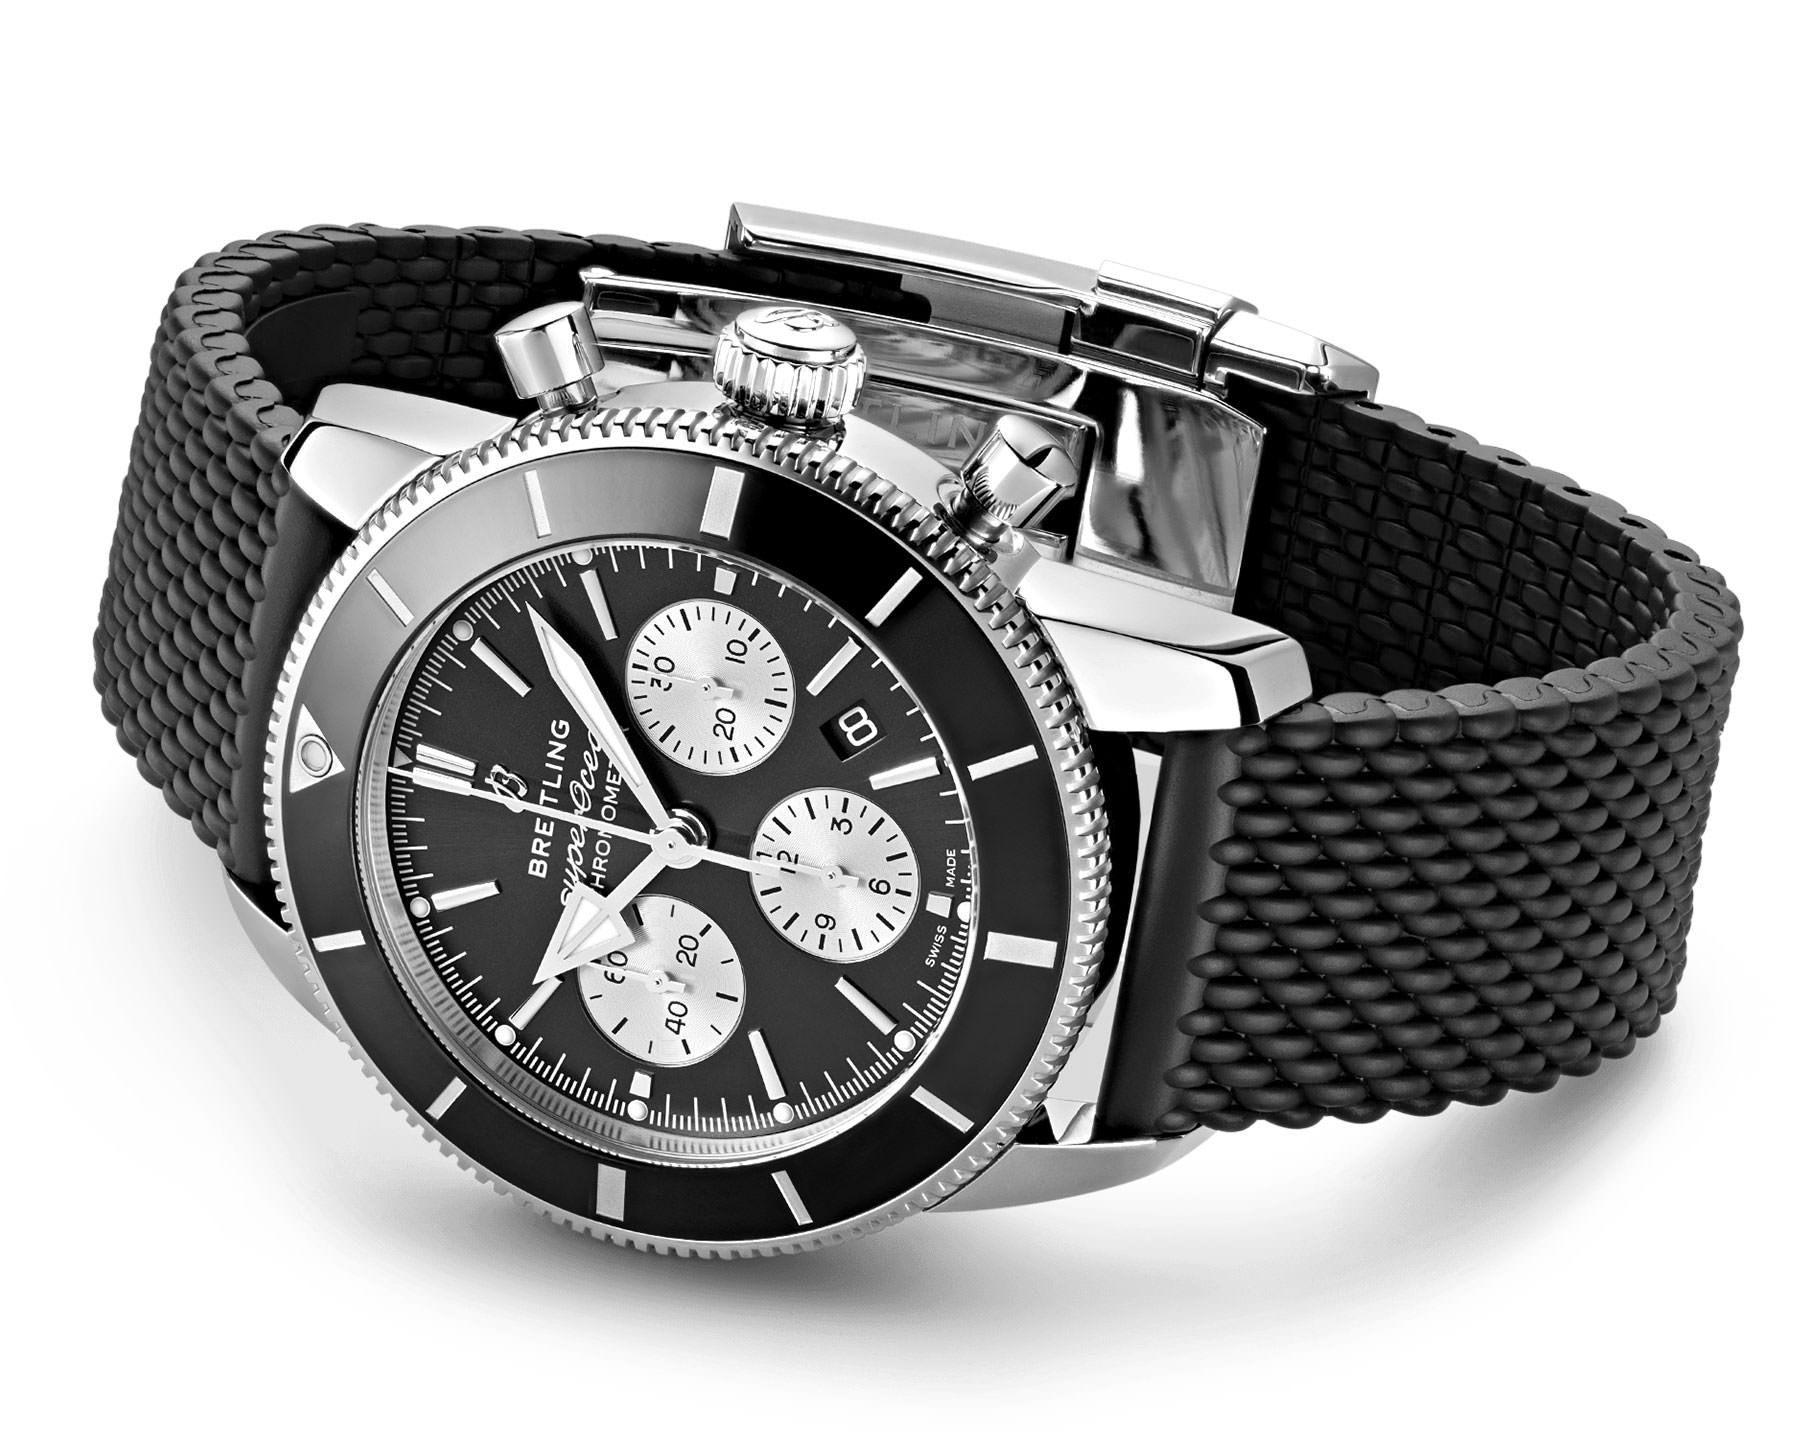 Breitling Superocean Heritage 44 mm Watch in Black Dial